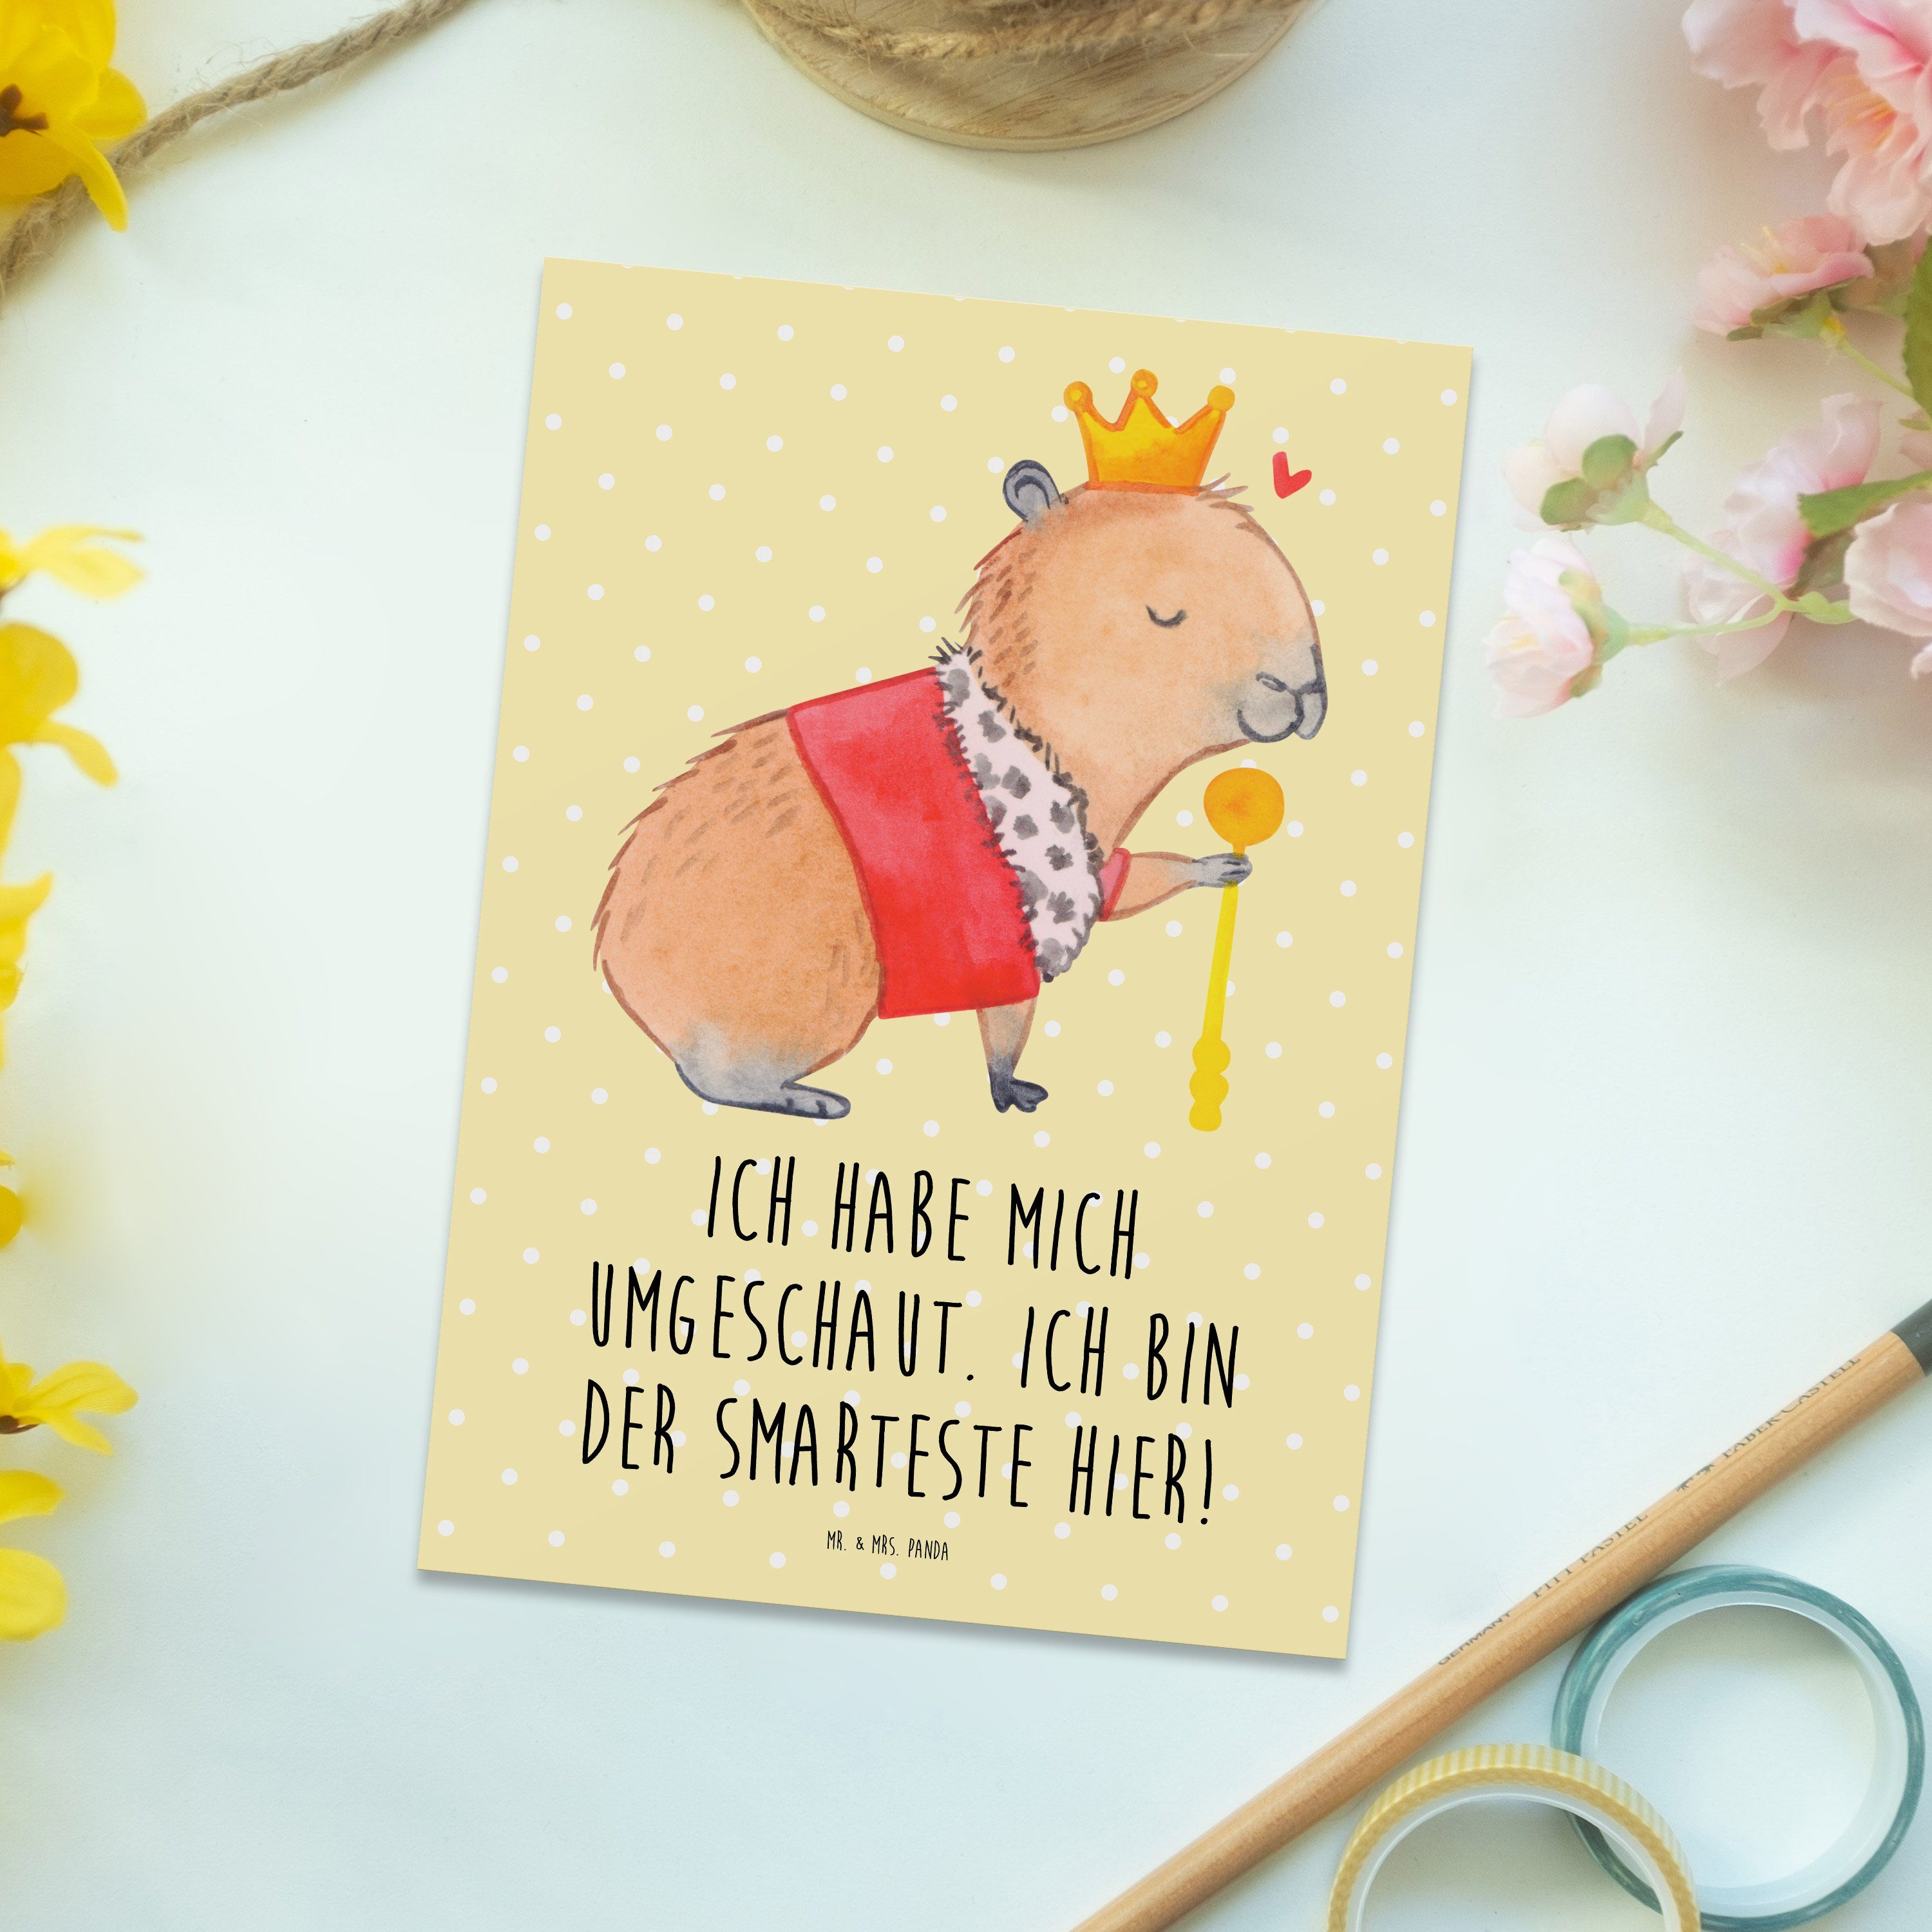 Mr. & Mrs. Panda König Capybara - Tiermotive, Pastell Postkarte Geschenk, - Einladung, Tier Gelb